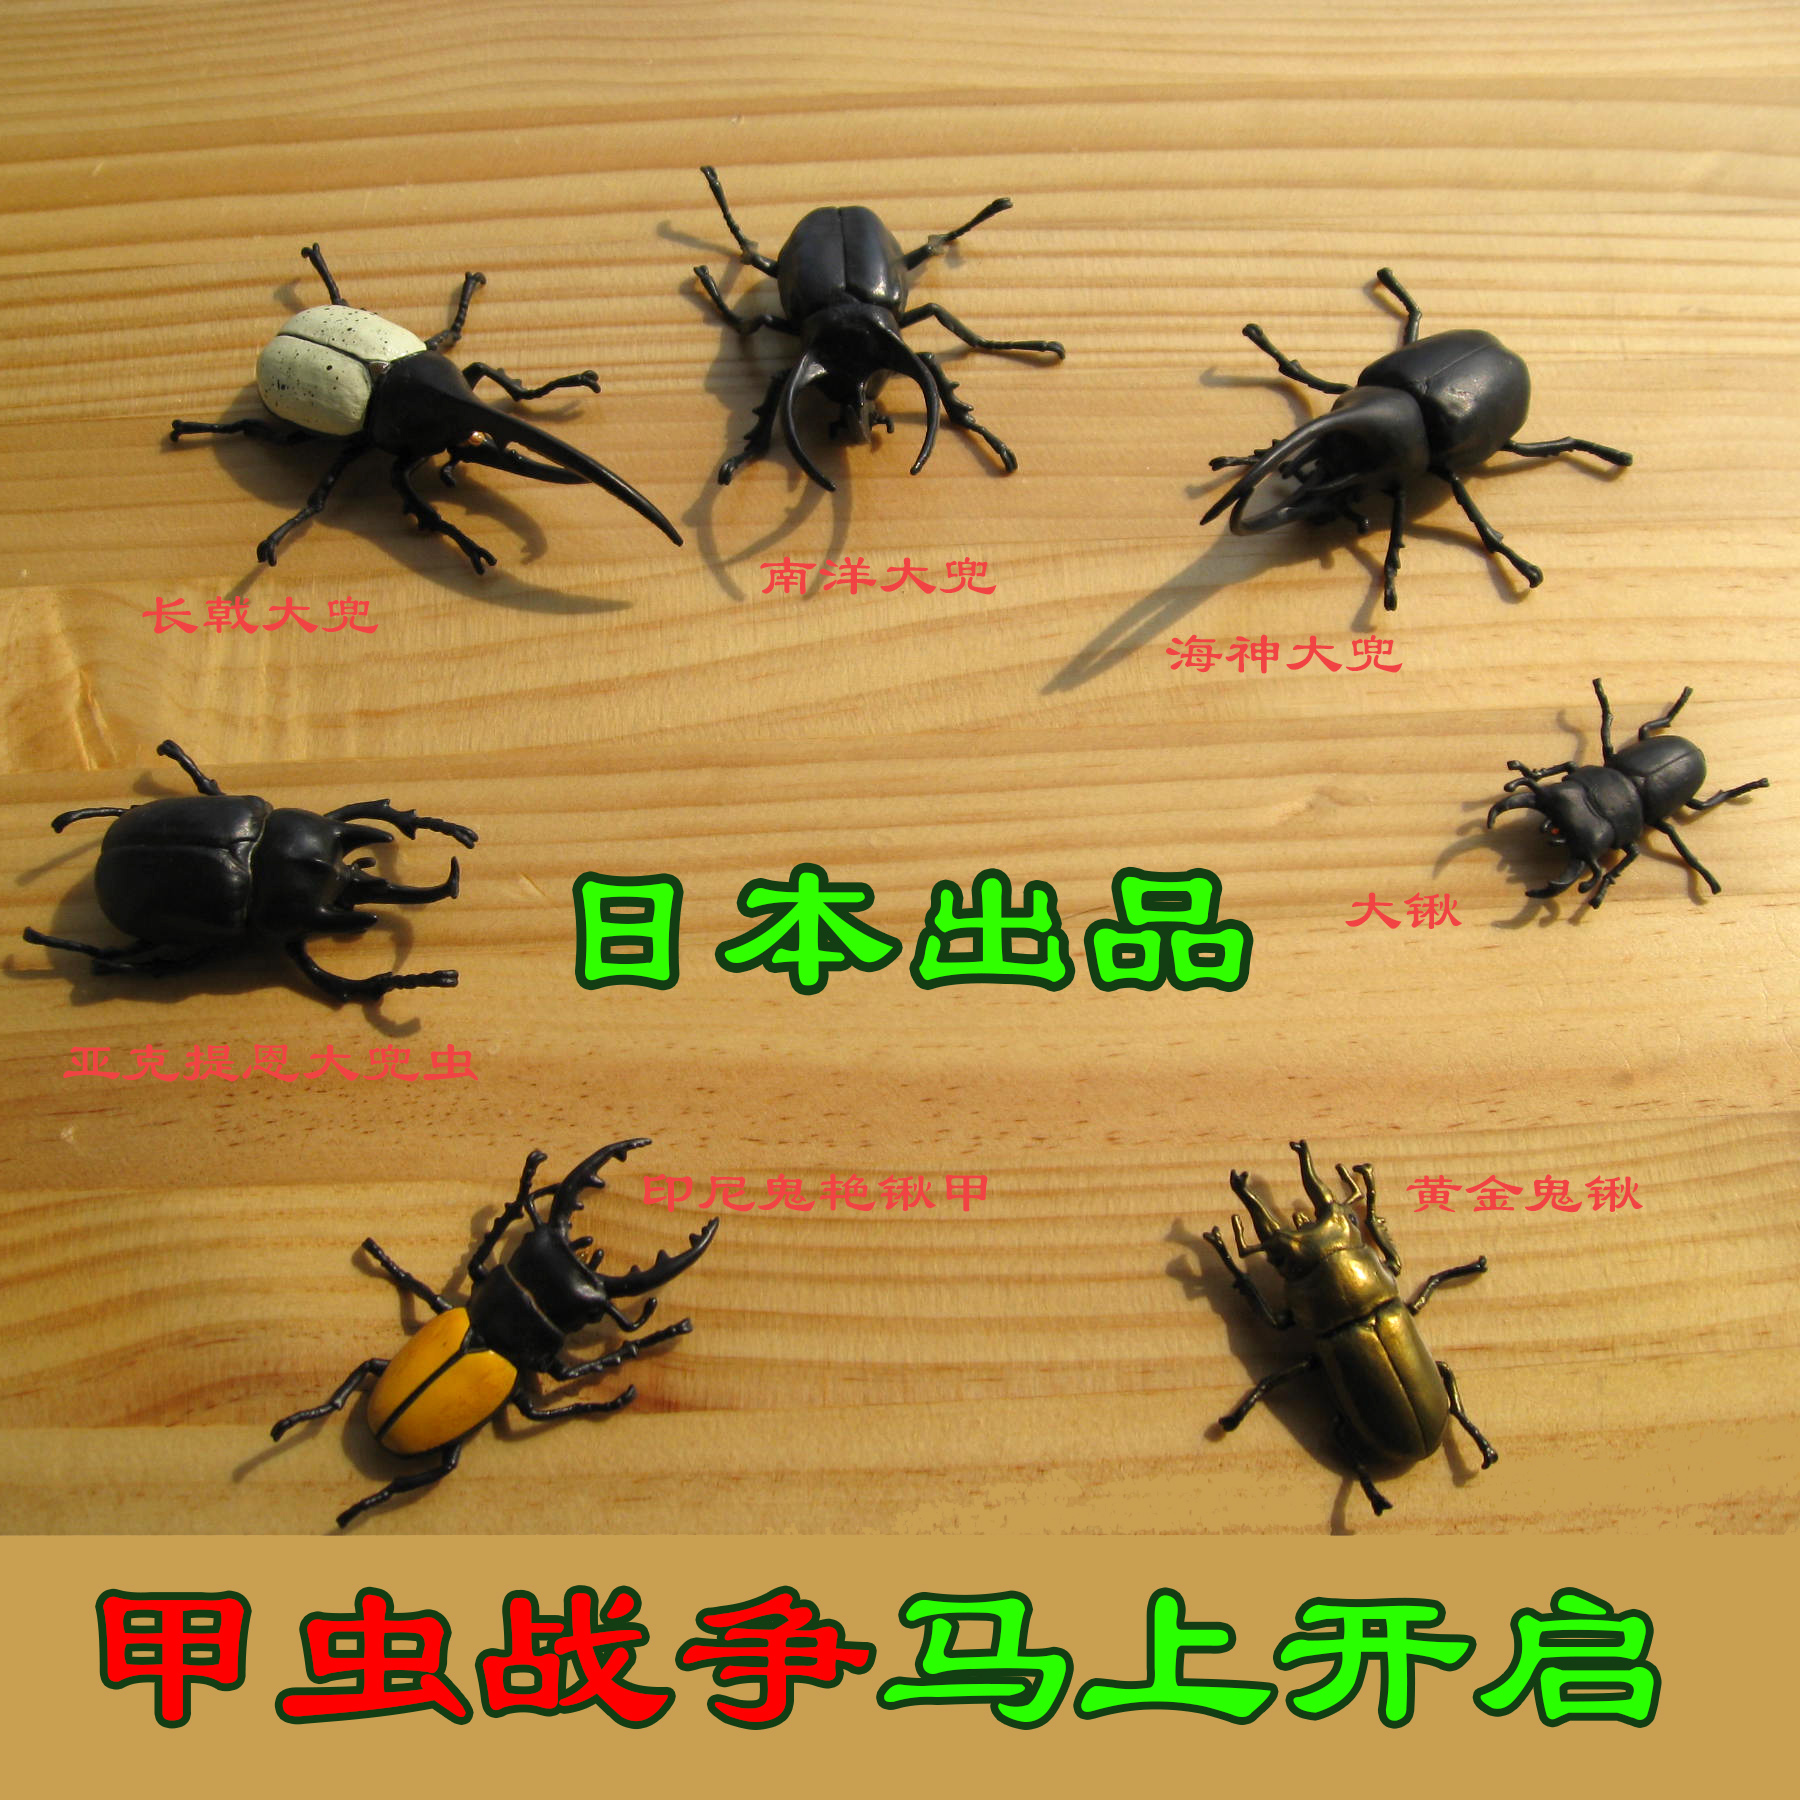 甲虫成虫全集独角仙模型亚克提恩长戟海神大兜南洋大兜、日本进口